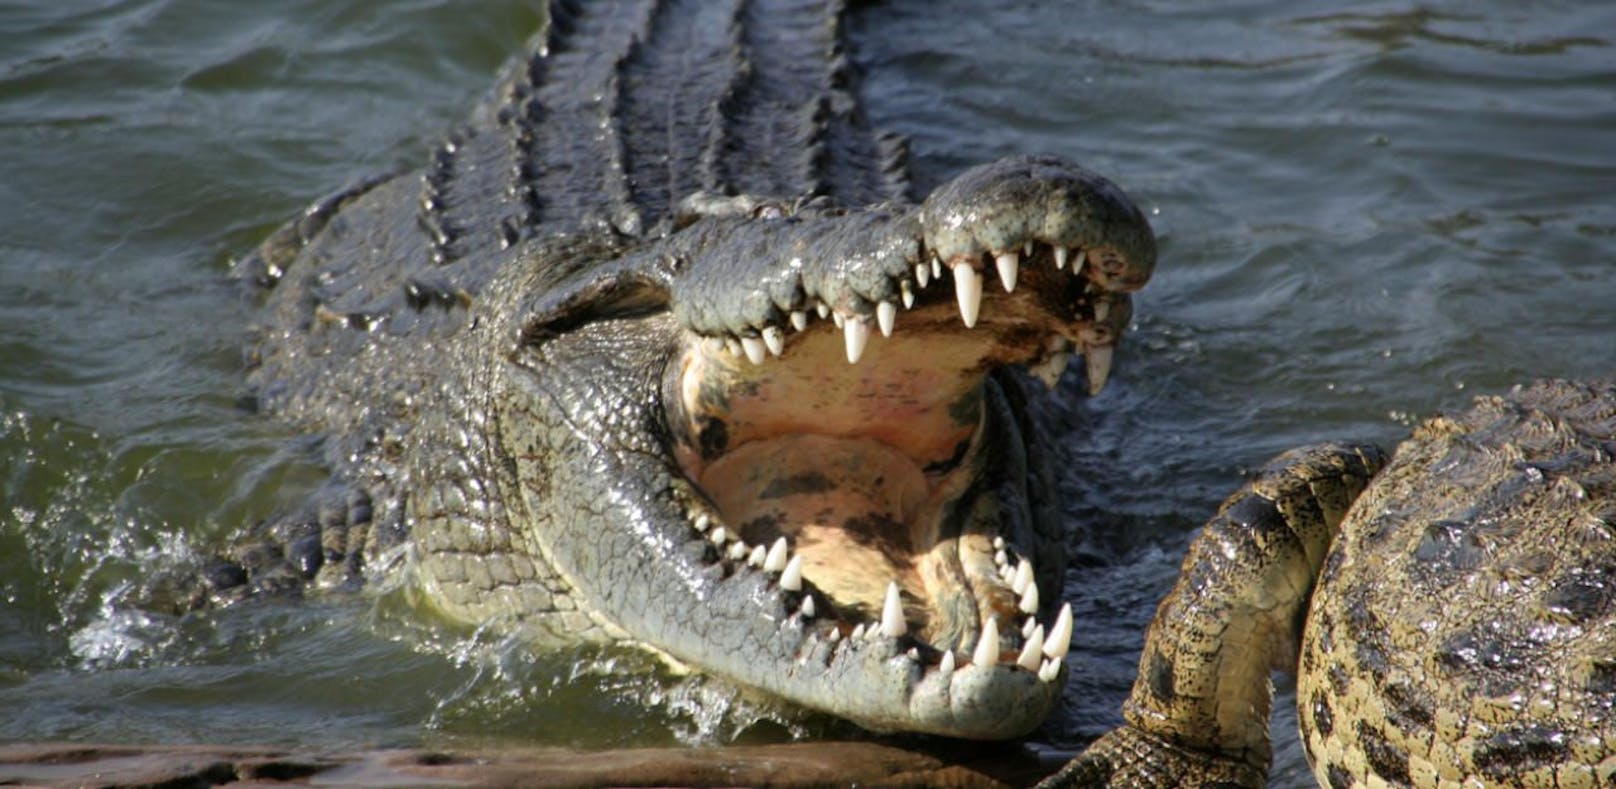 Krokodil beißt Wildpinkler den Arm ab